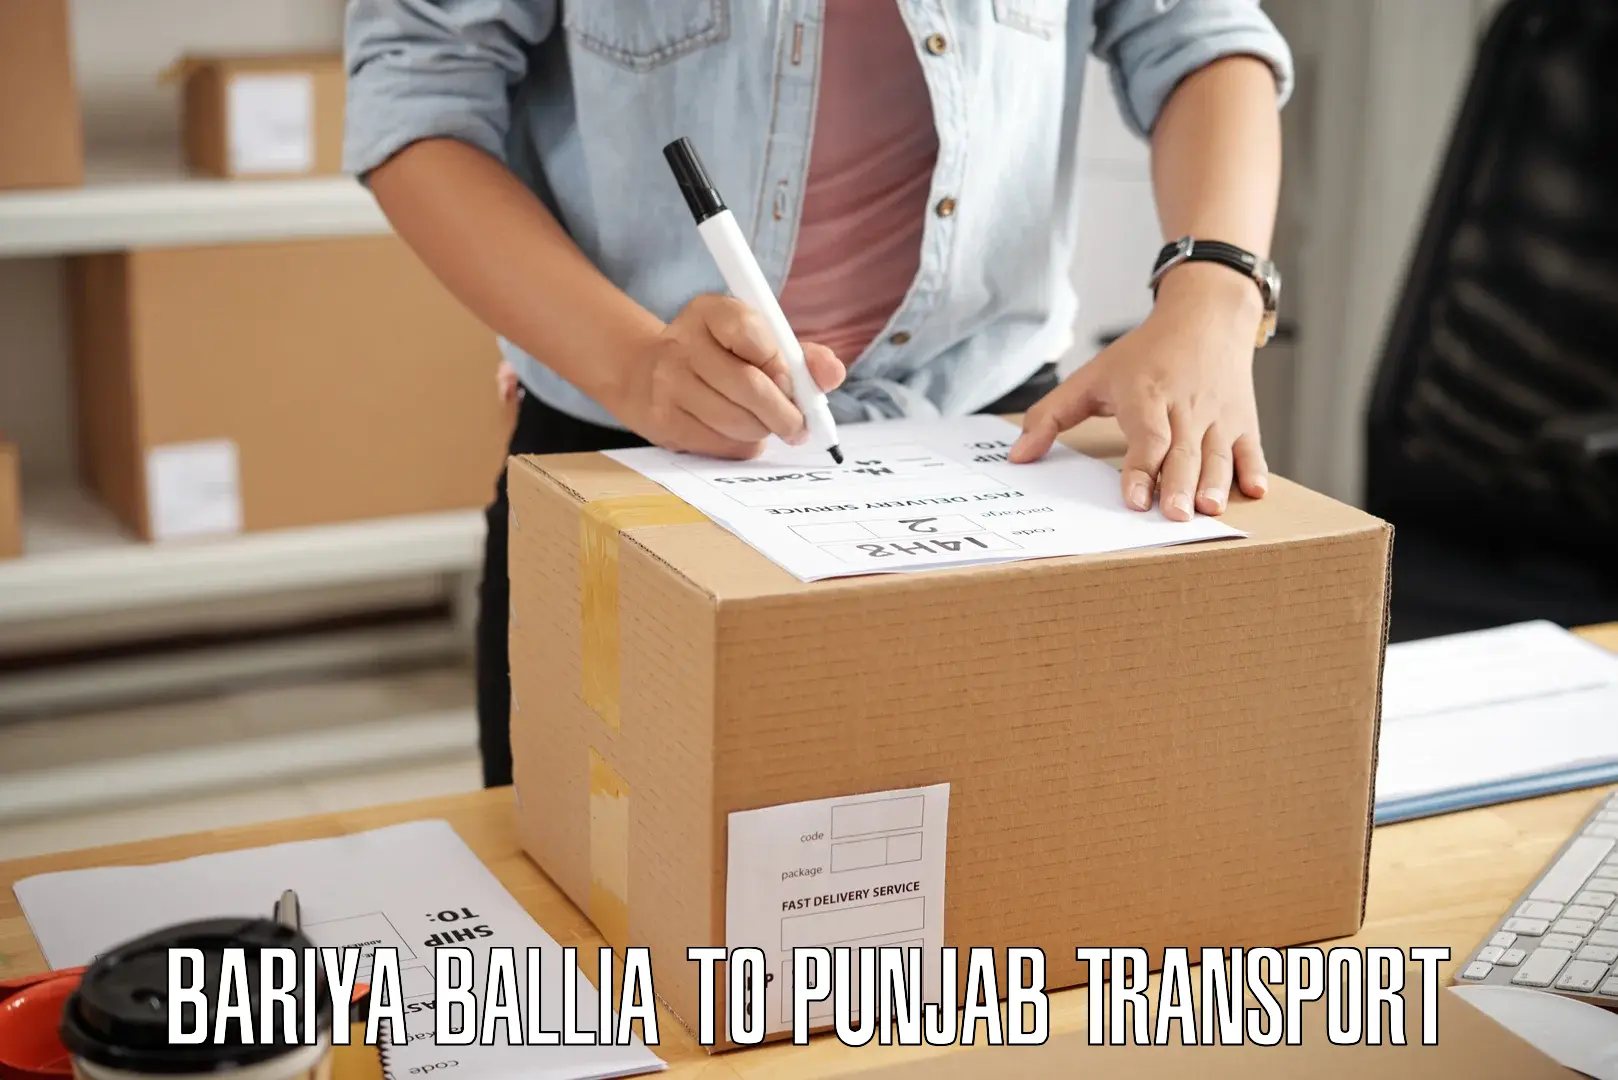 Part load transport service in India Bariya Ballia to Punjab